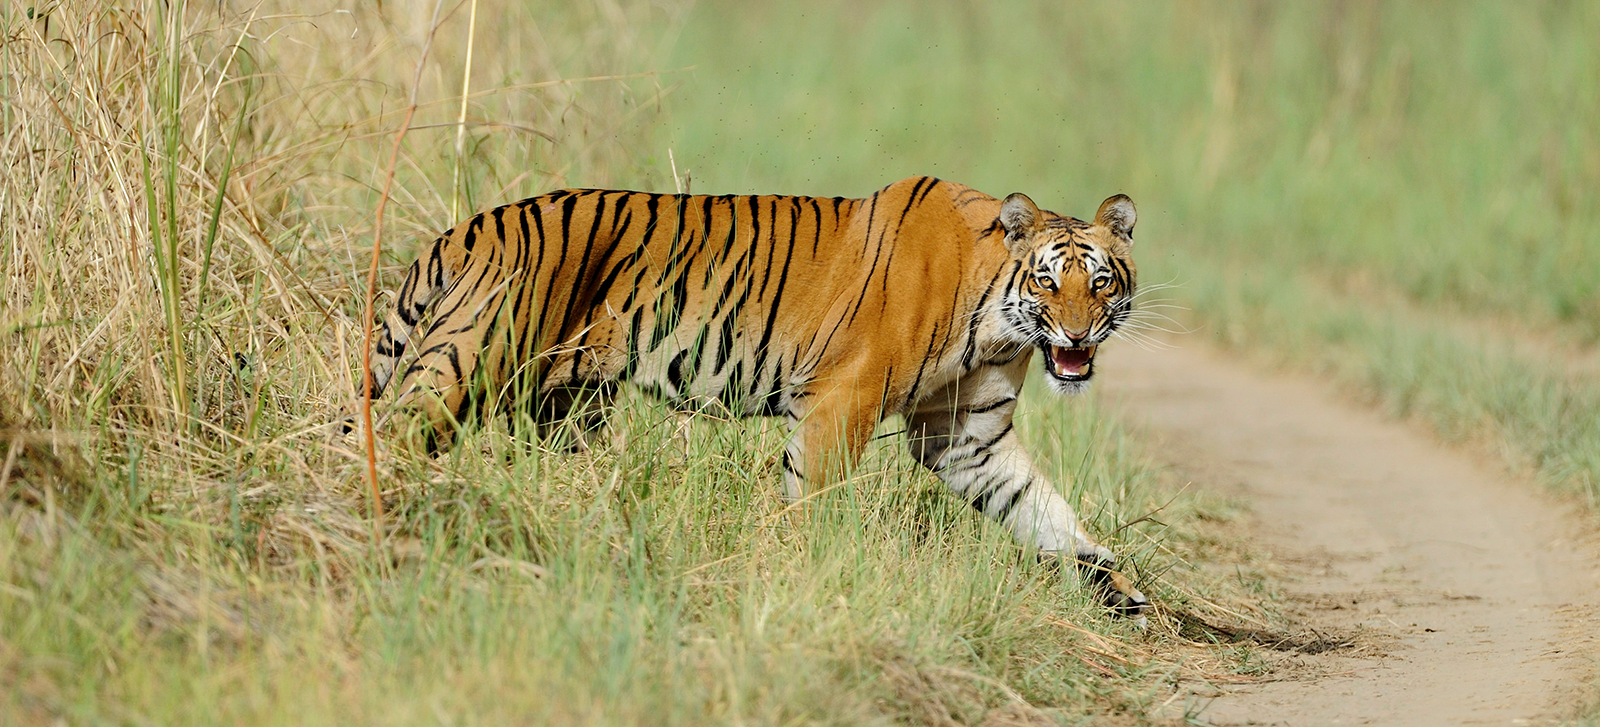 全球环境基金对老虎的支持有助于整个生态系统